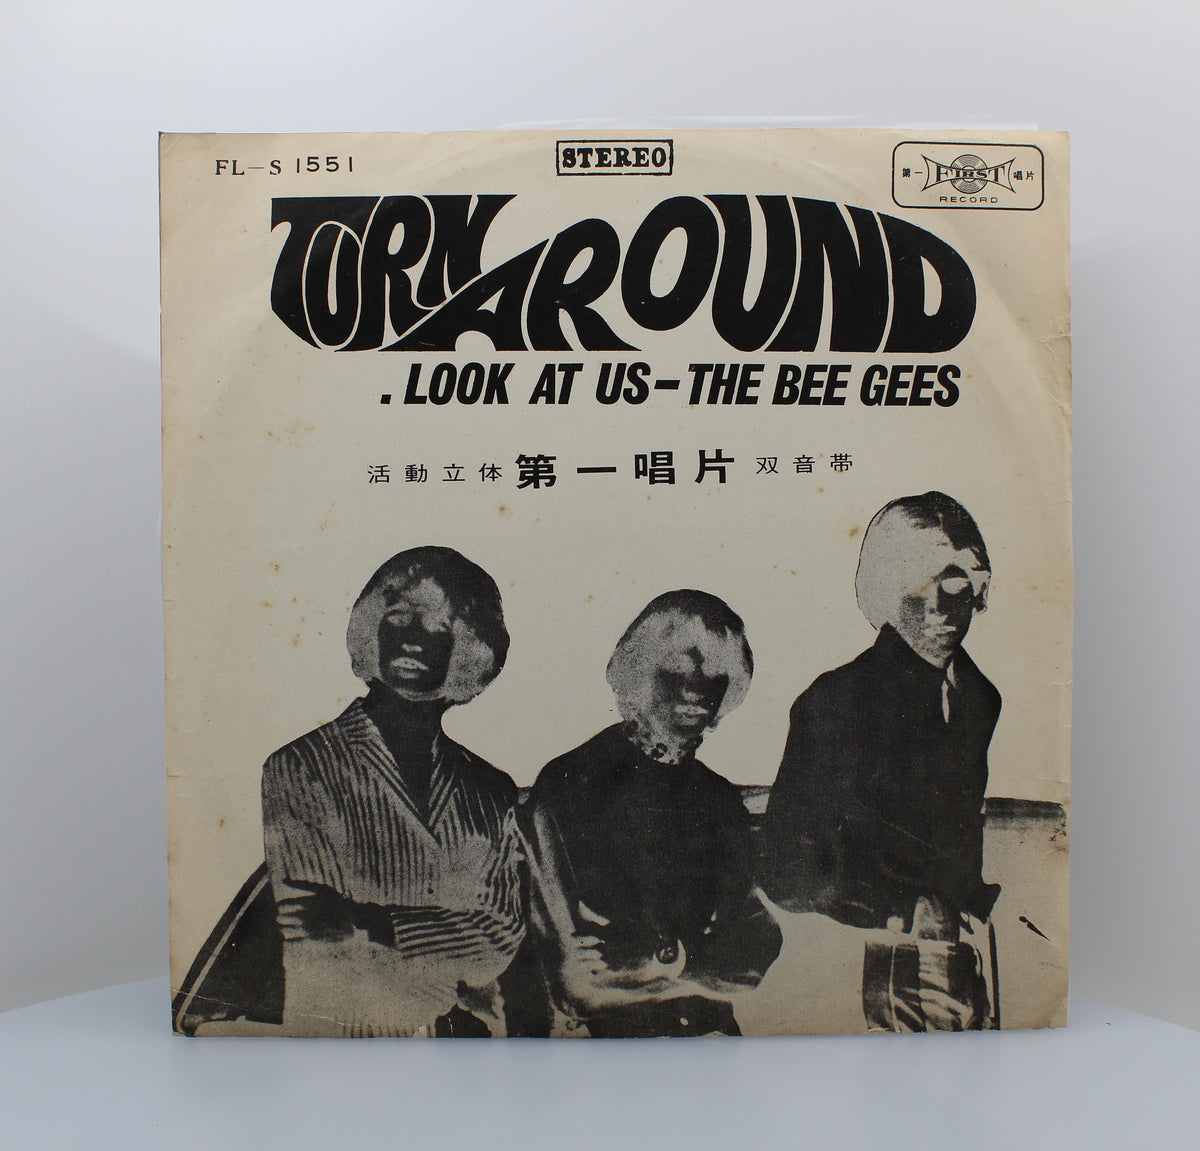 The Bee Gees – Turn Around, Look At Us, Vinyl, LP Album, Taiwan 1967